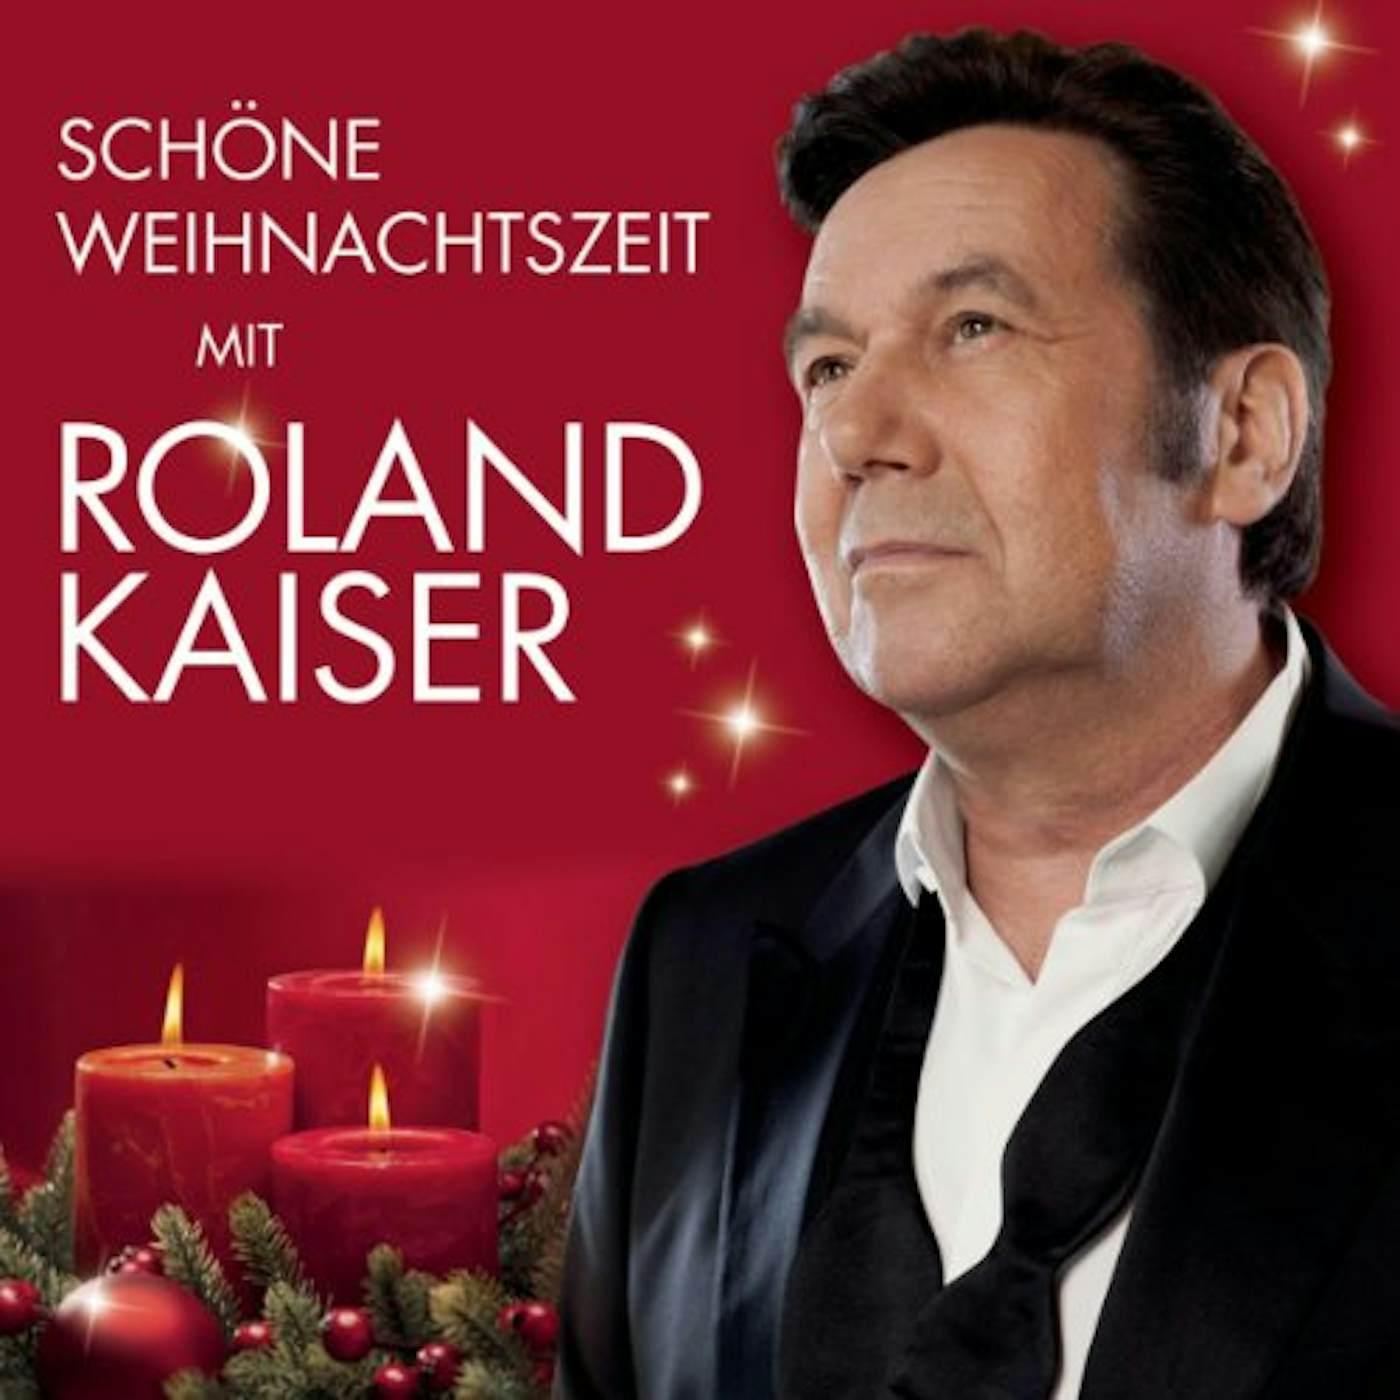 Roland Kaiser SCHONE WEIHNACHTSZEIT CD